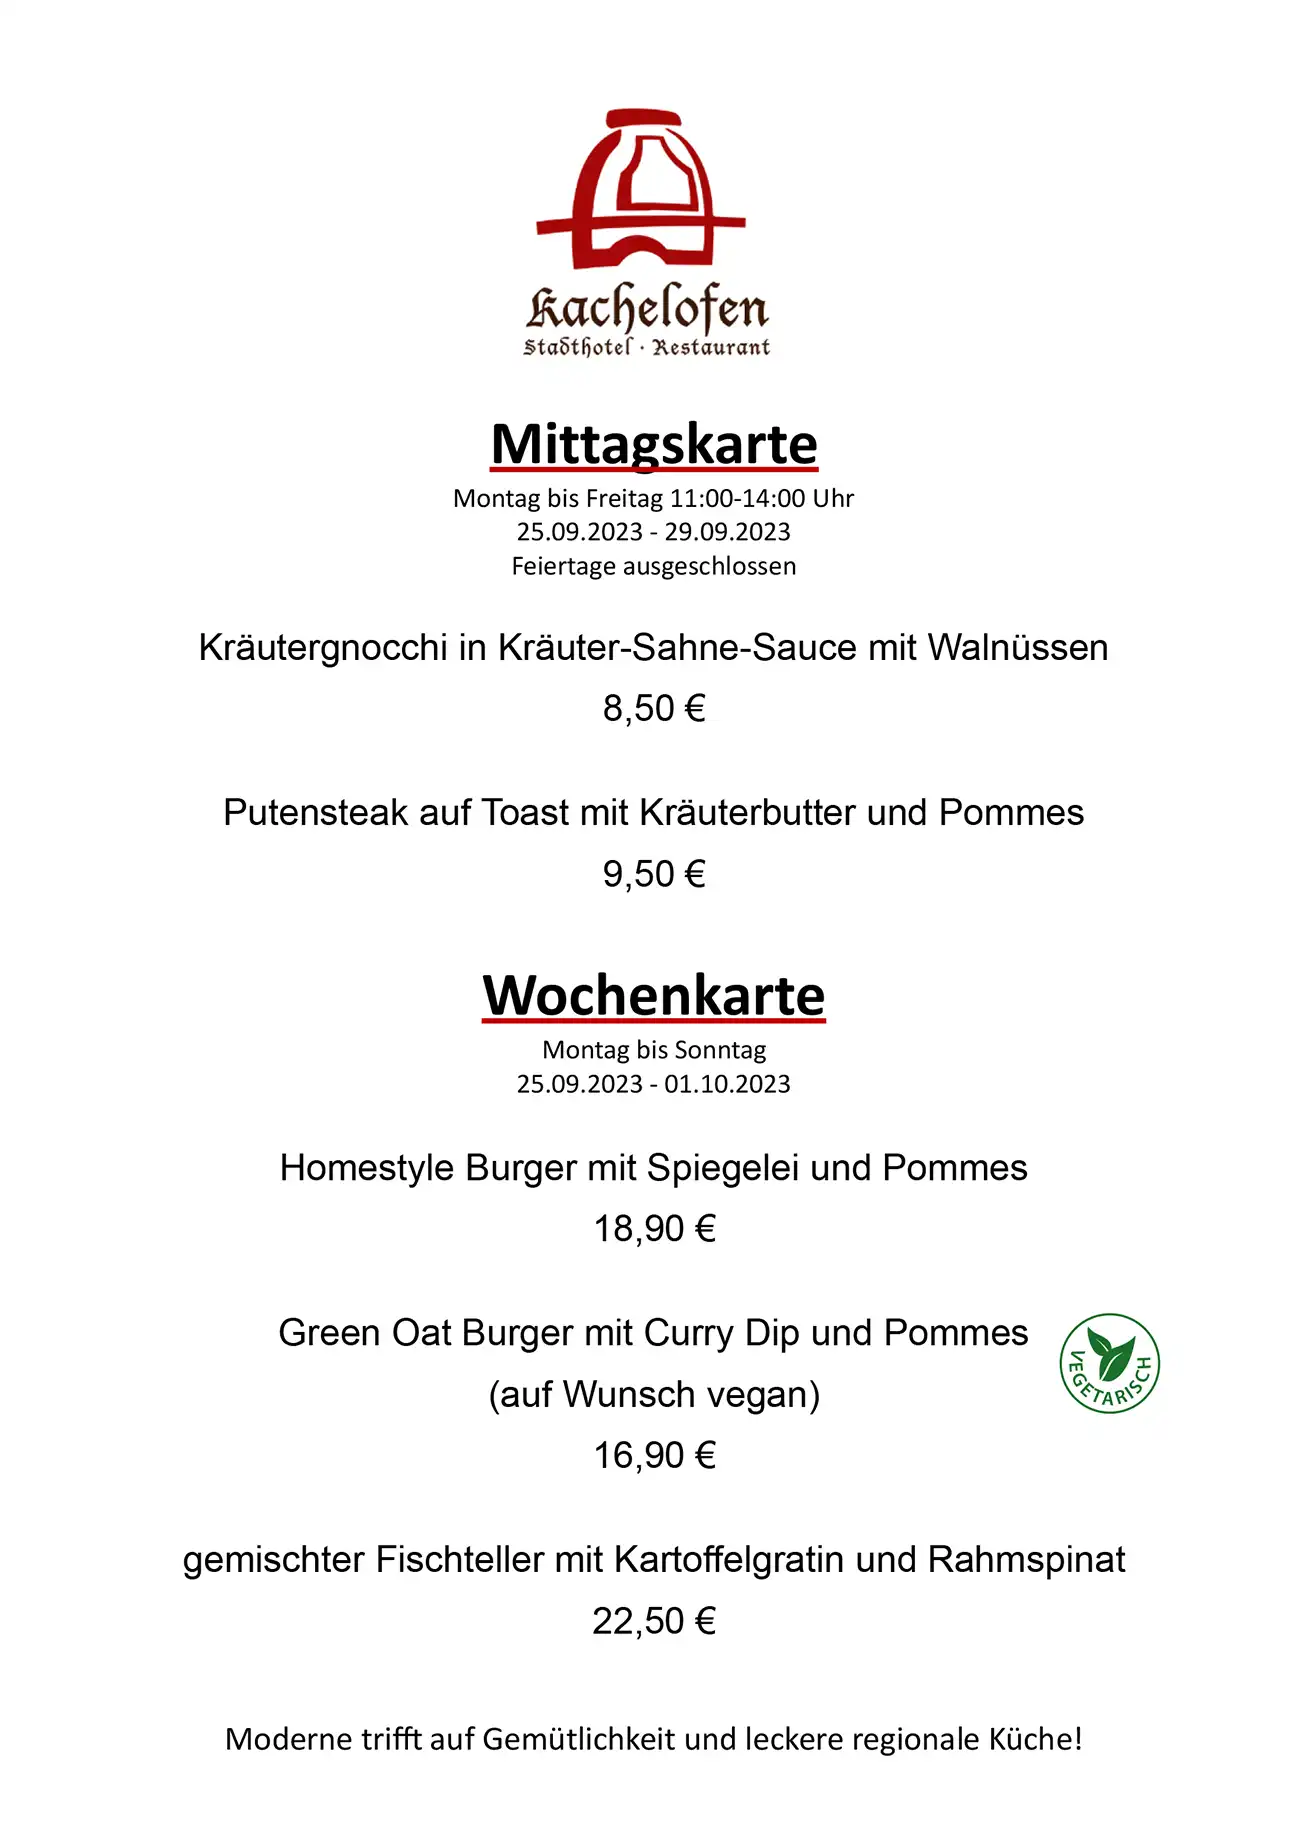 Mittagskarte und Wochenkarte Restaurant Kachelofen